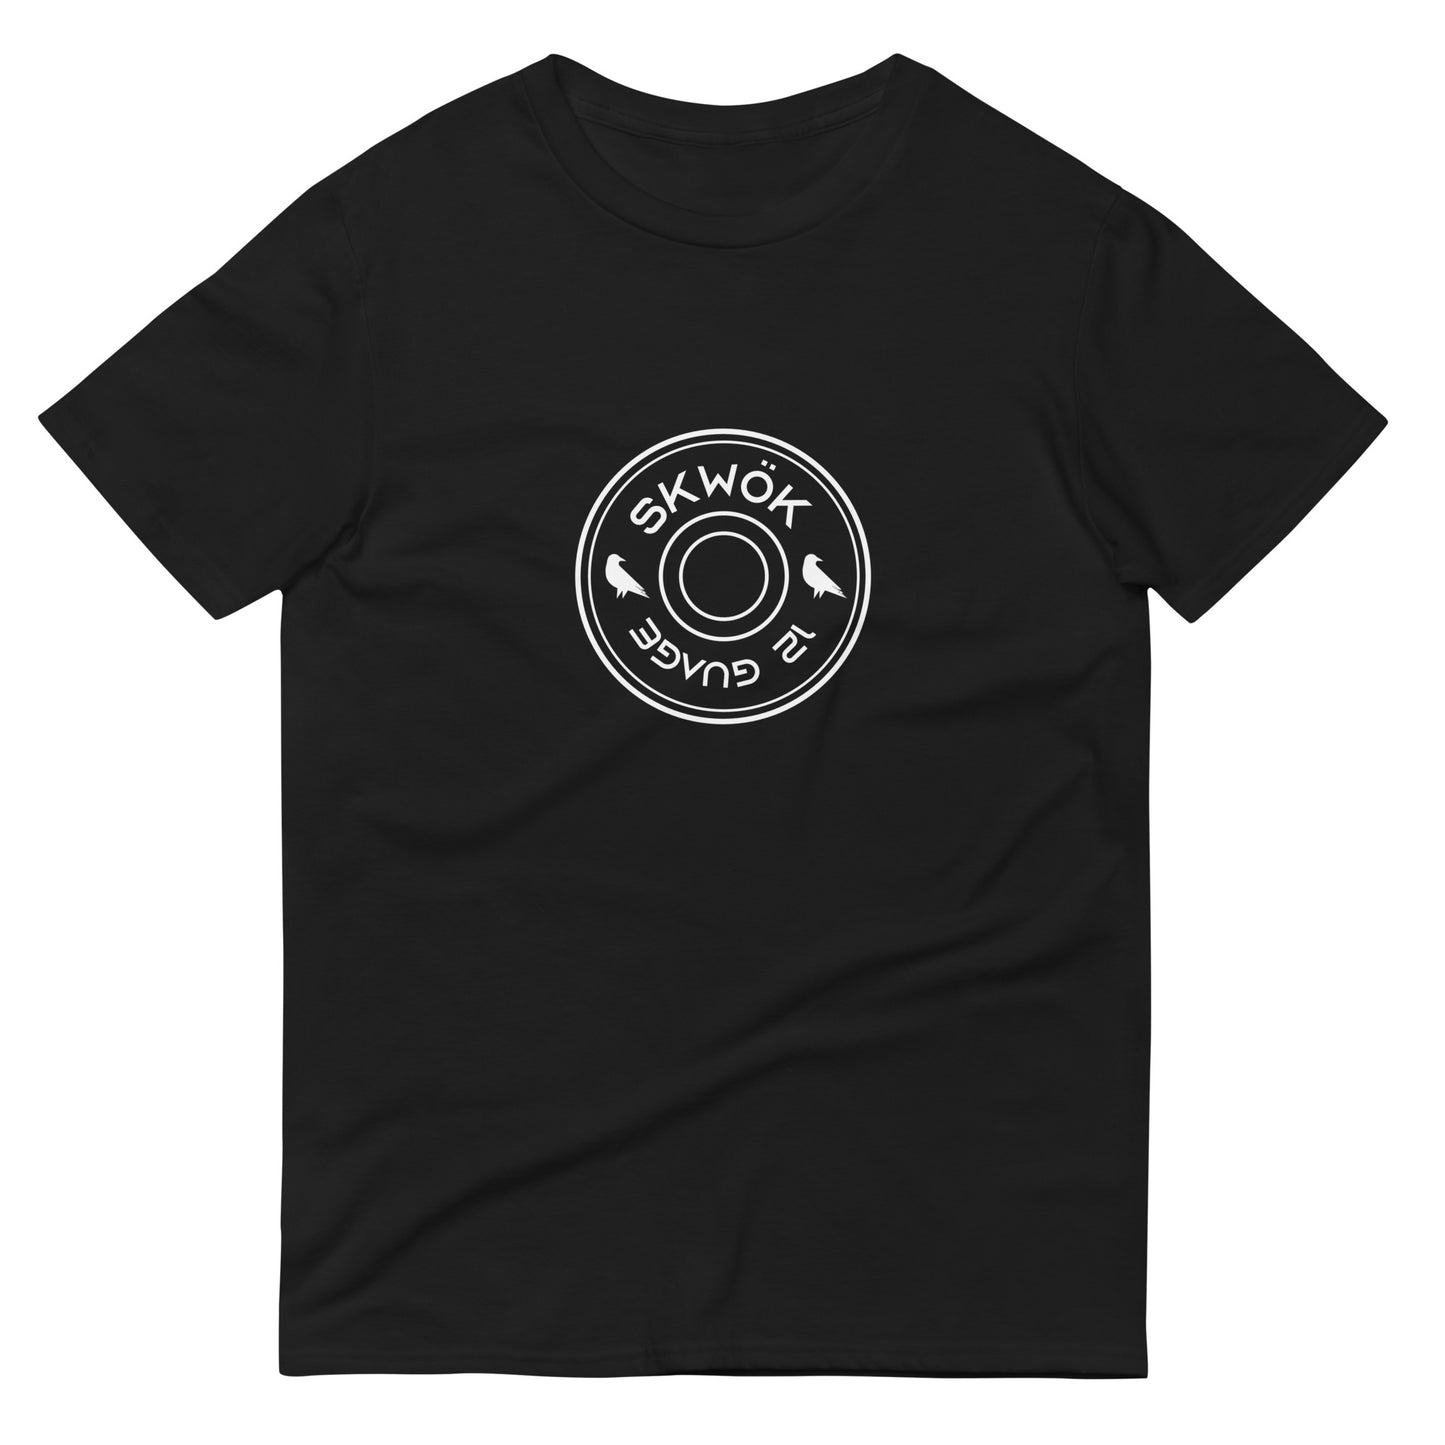 Skwok Brand / #21 / T-shirt / Shell 12 Guage